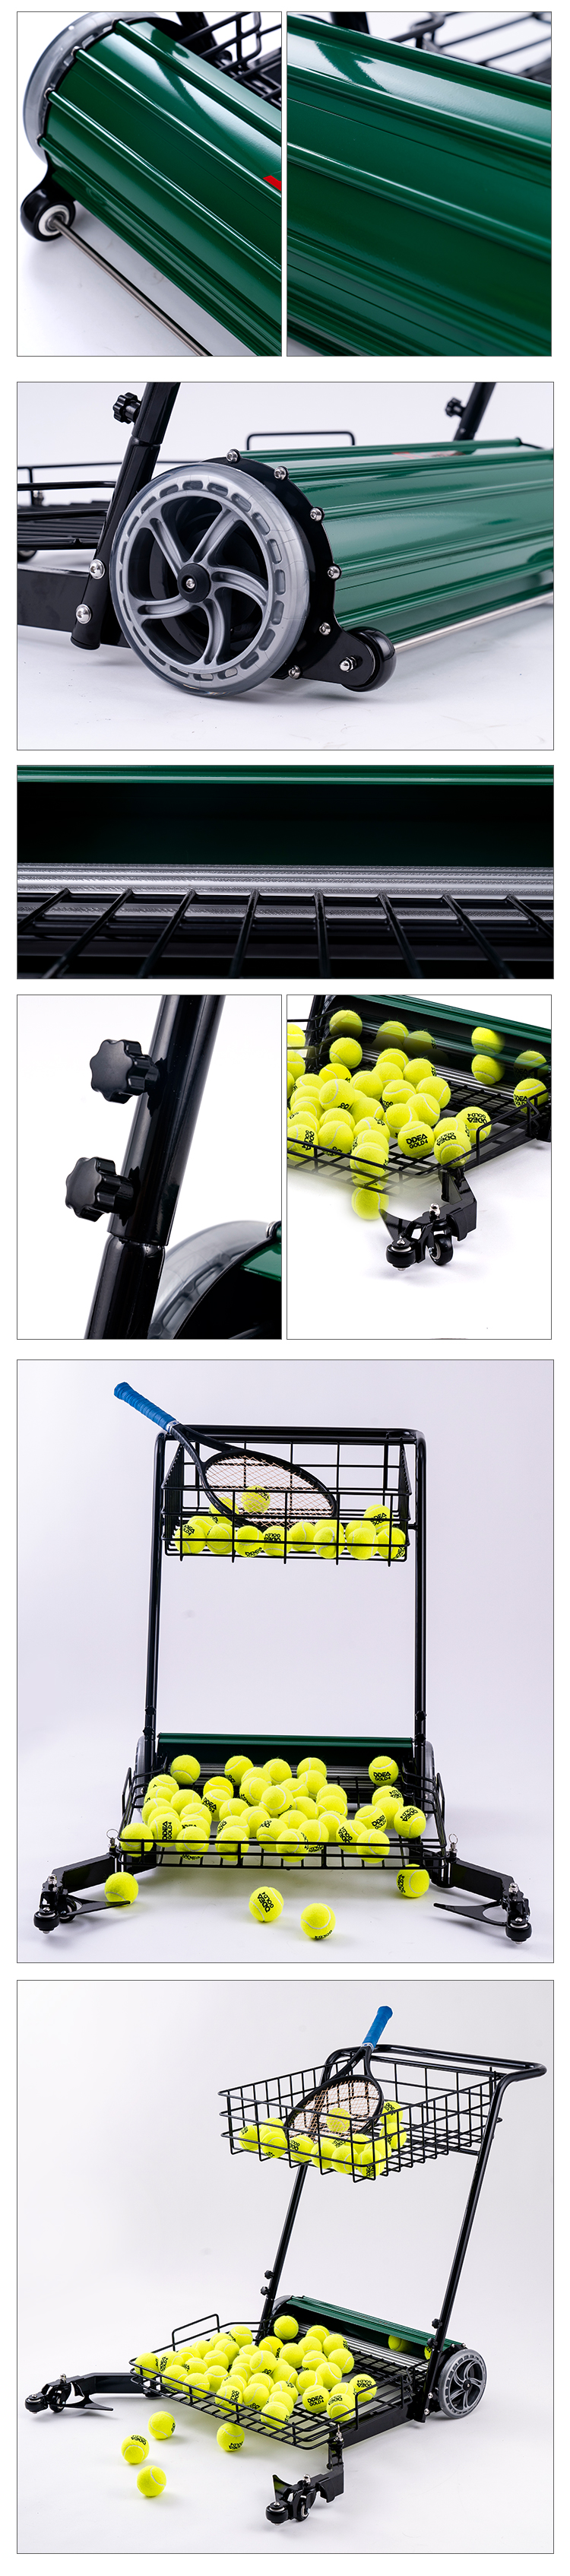 टेनिस कलेक्ट मशीन (7)